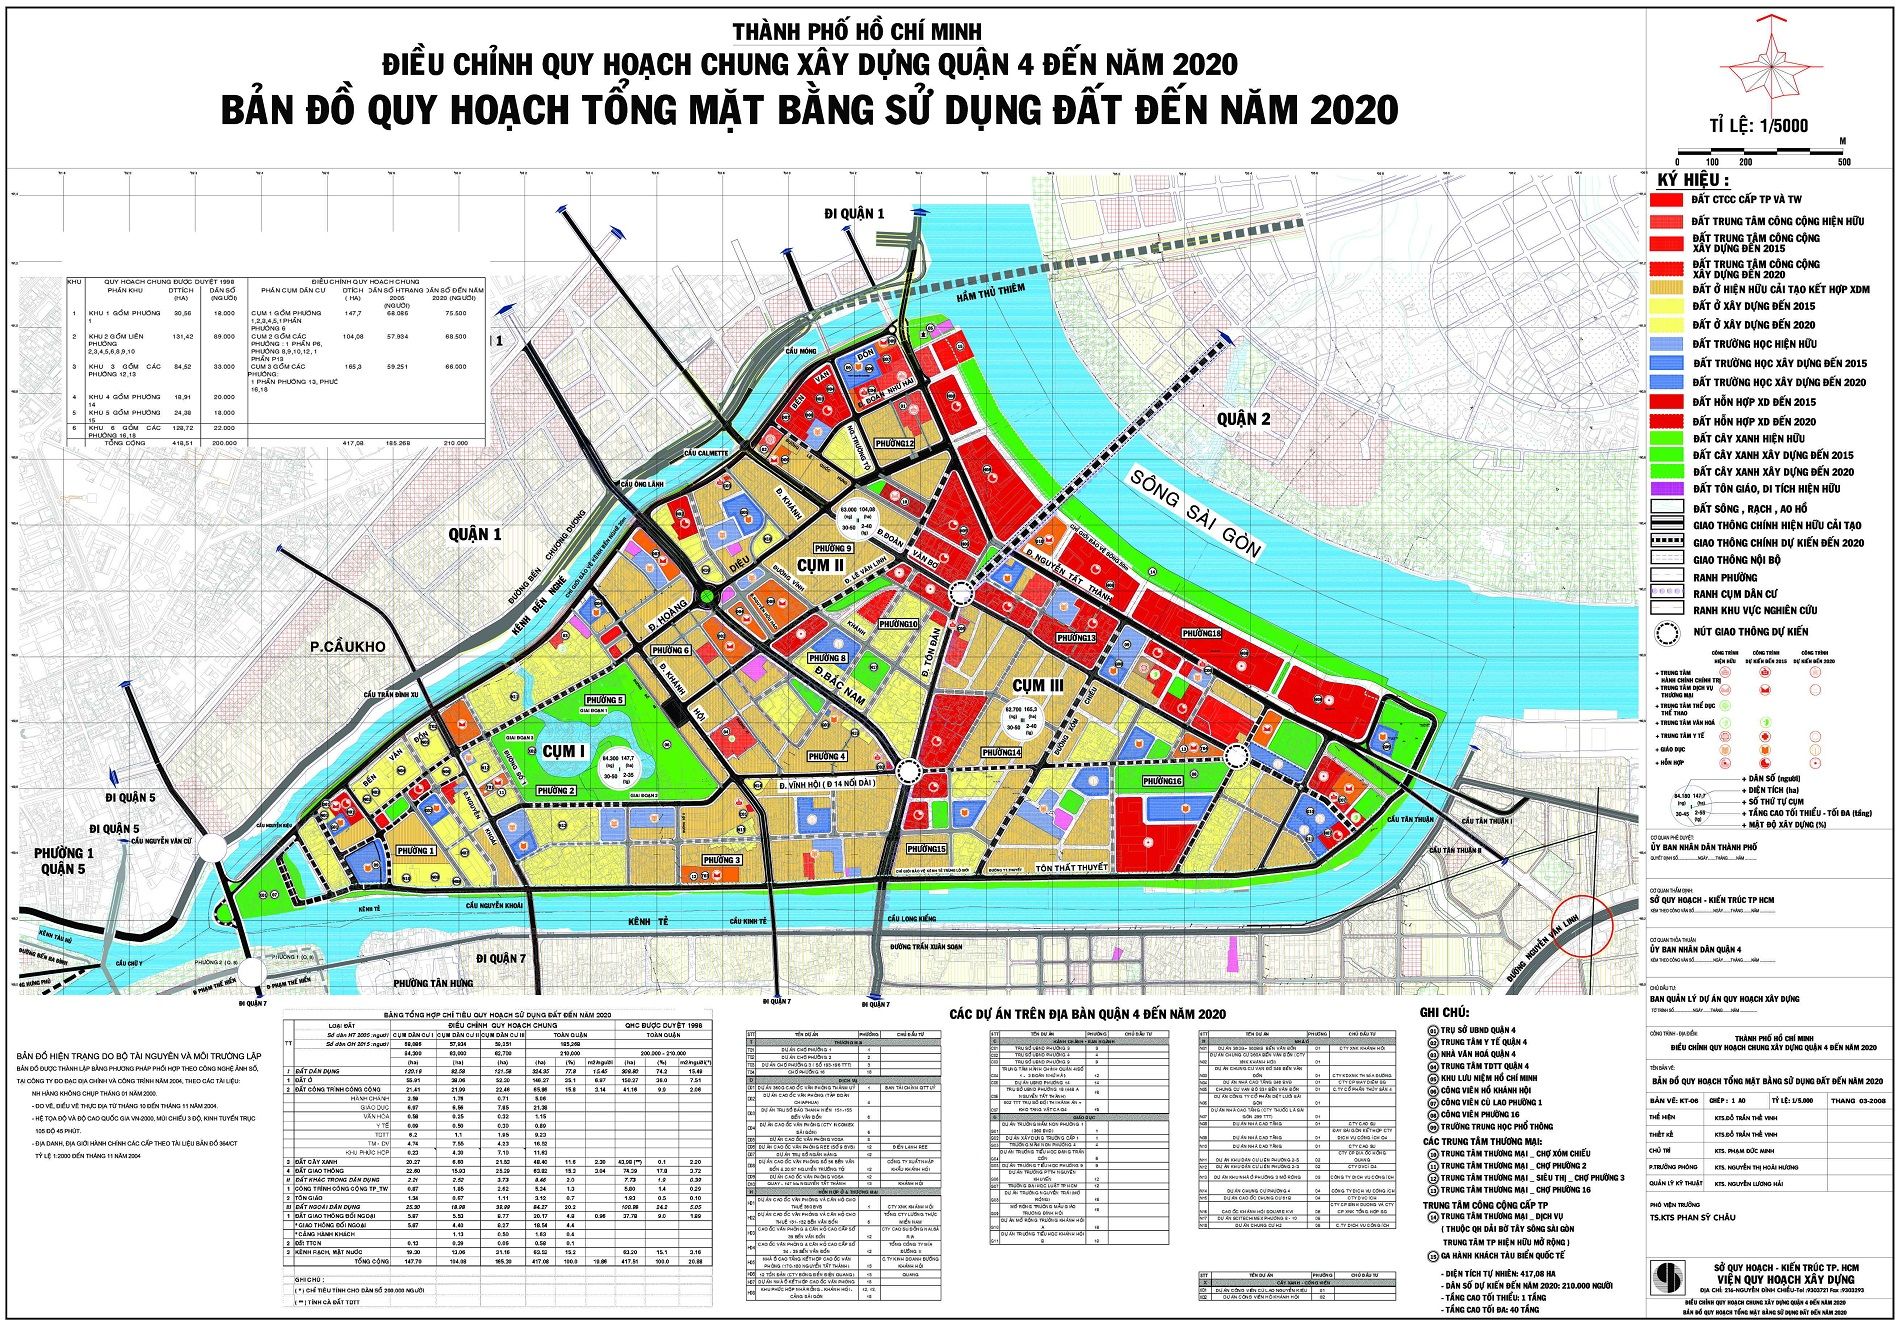 Chi tiết bản đồ quy hoạch quận 4 đến năm 2020